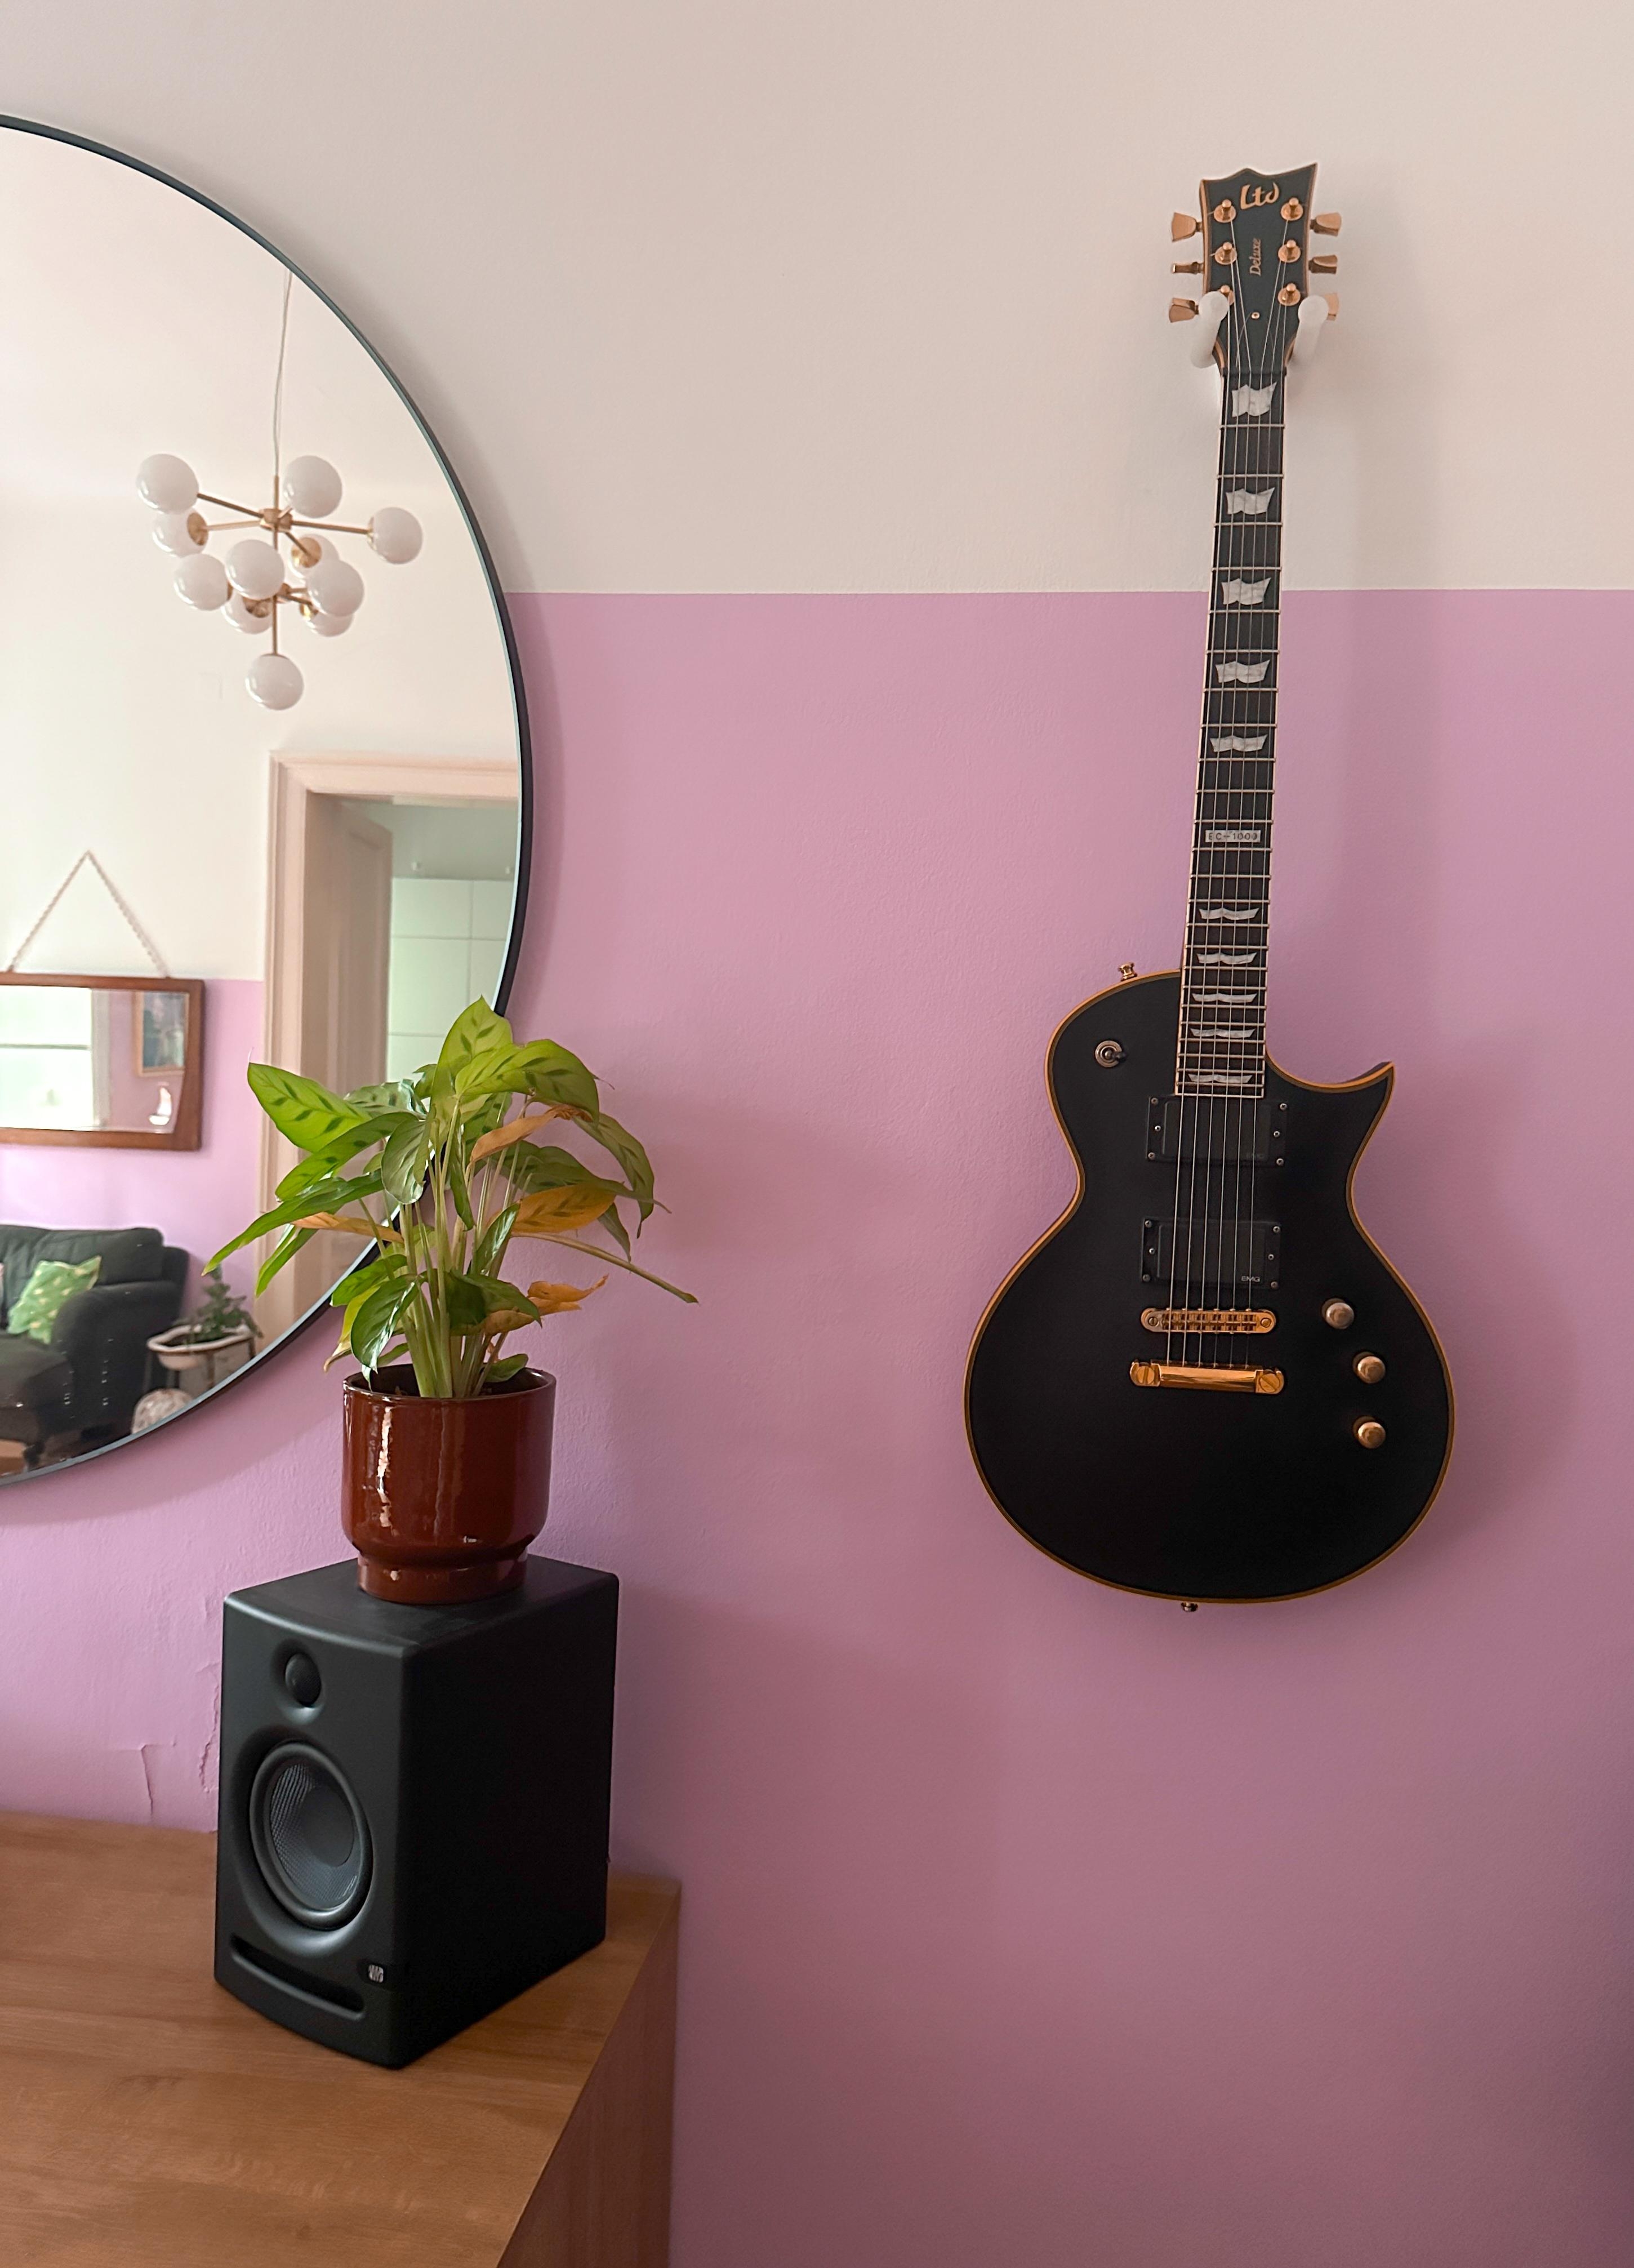 Eine von 6 Gitarren an unseren Wänden 😊

#Musik #Gitarre #Instrumente #rosa #zimmerpflanze #beleuchtung #spiegel